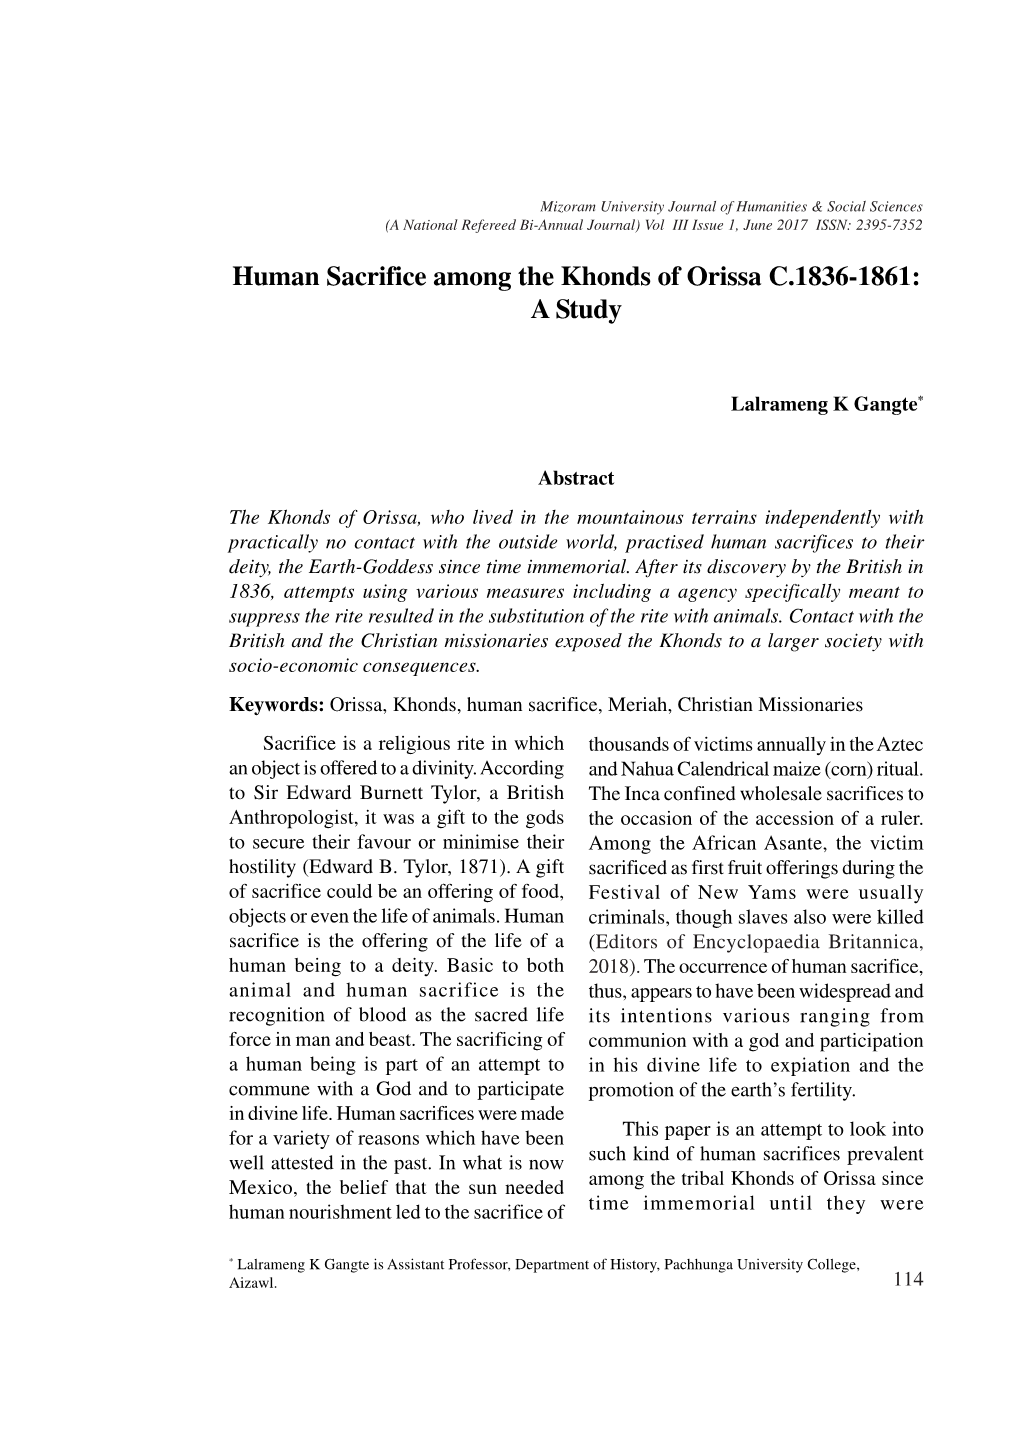 Human Sacrifice Among the Khonds of Orissa C.1836-1861: a Study